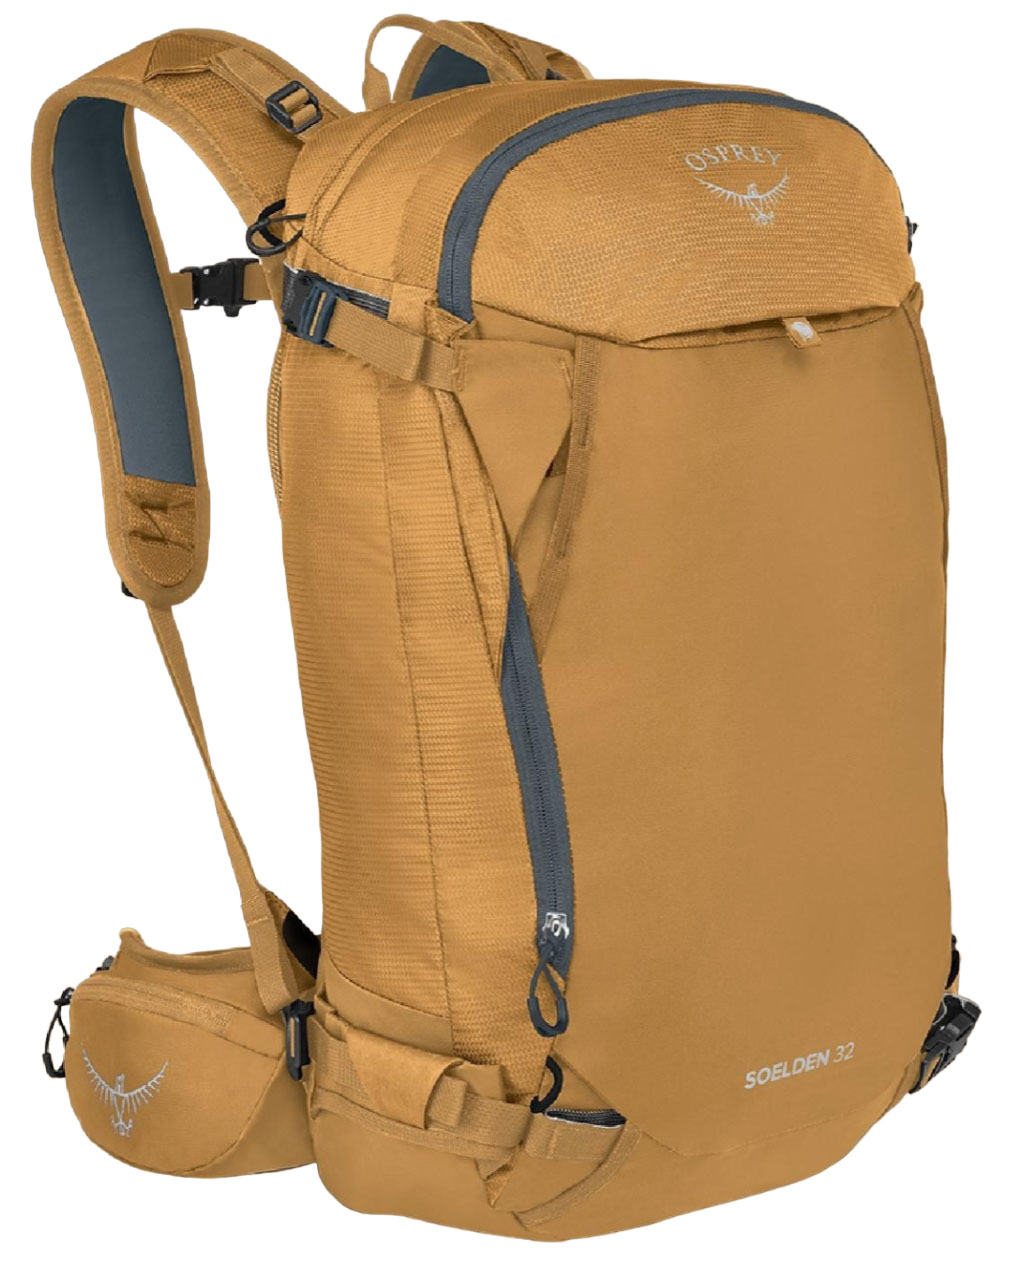 Osprey Soelden 32 ski backpack_